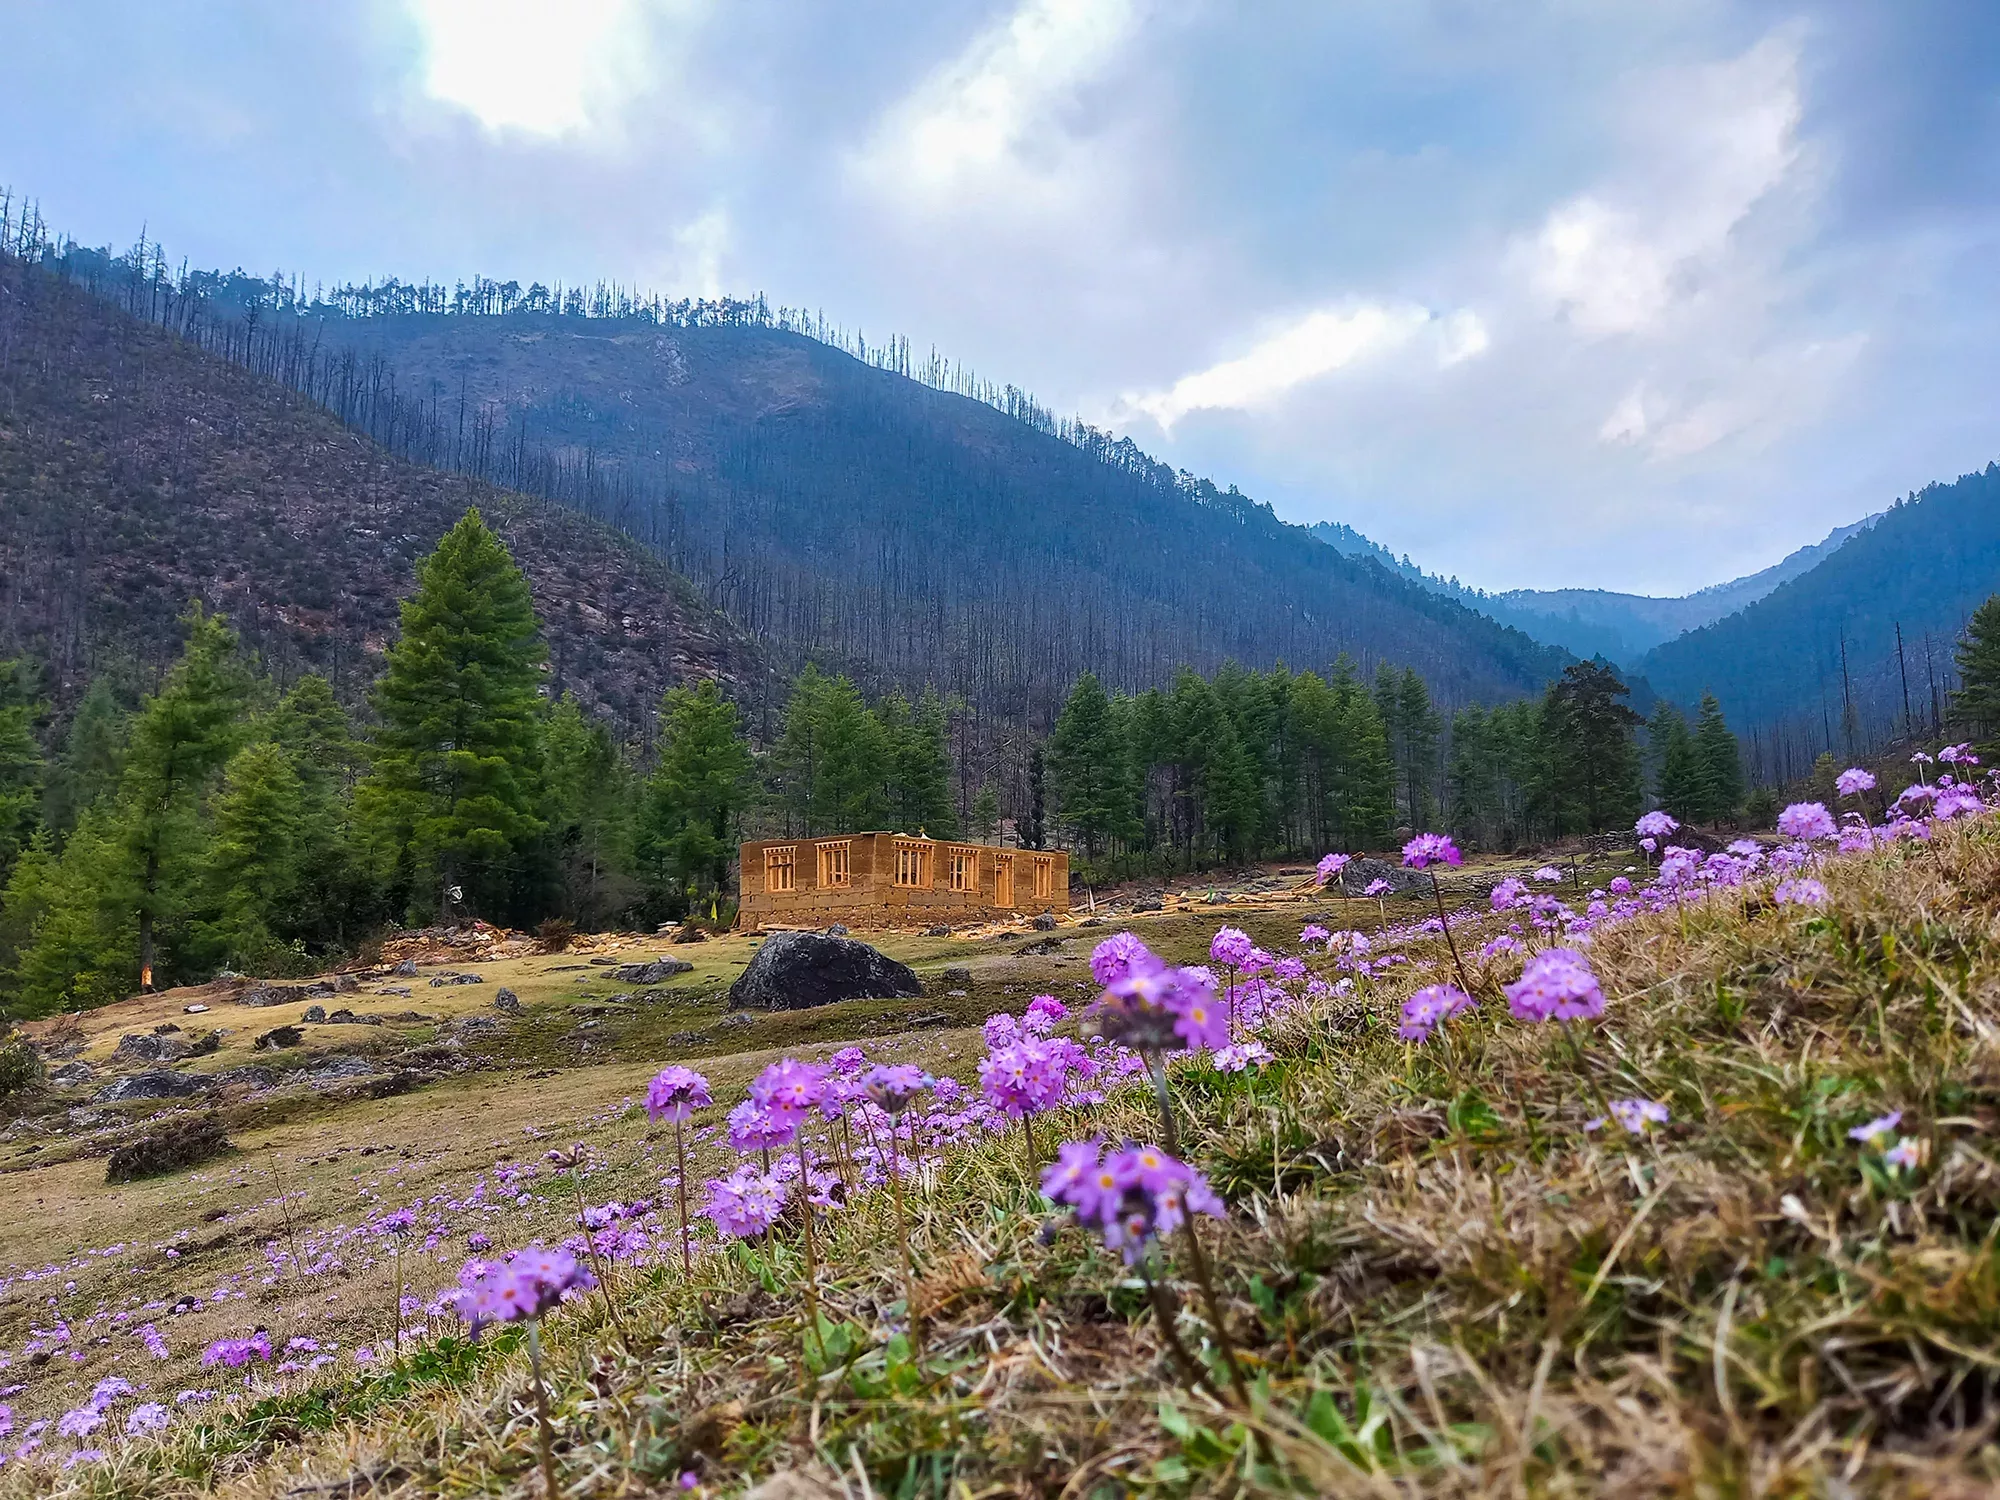 Haa Valley in Bhutan